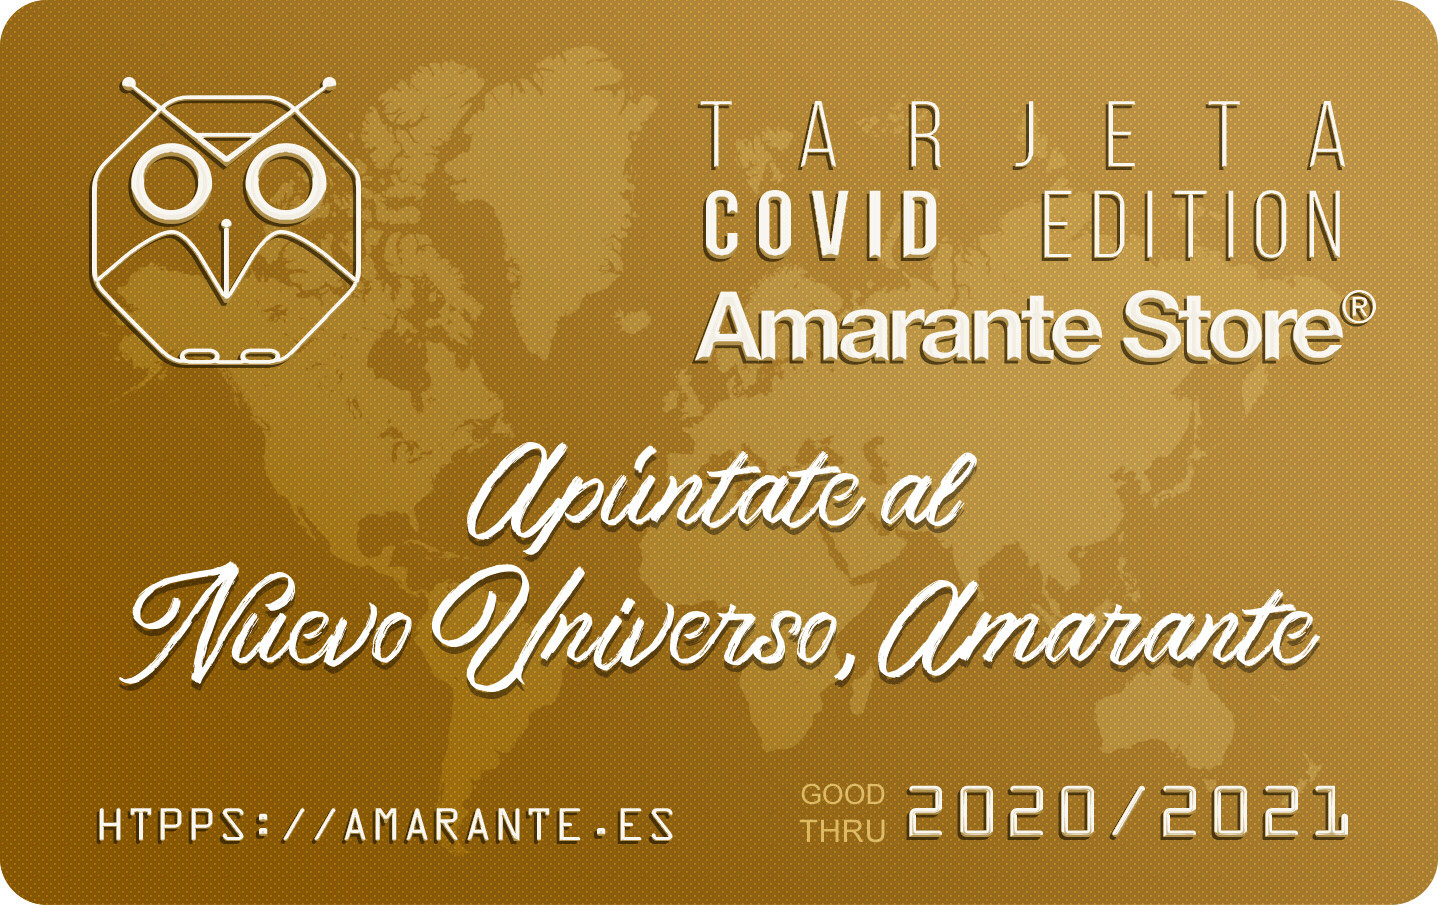 Tarjeta COVID Edition Amarante Store